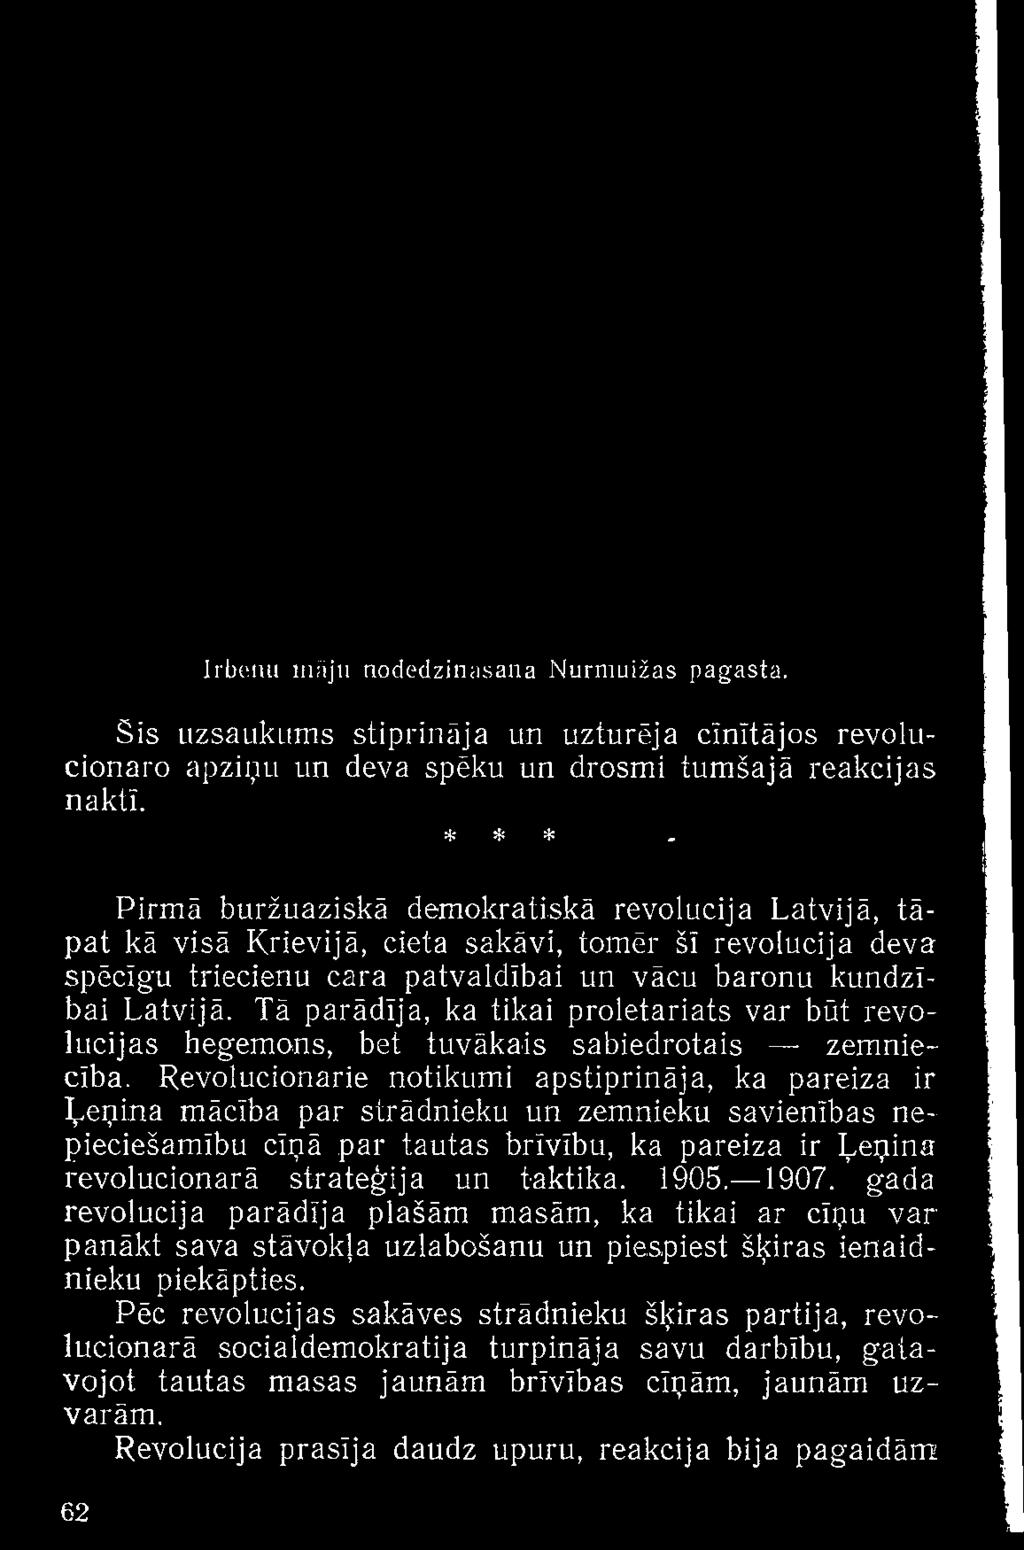 revolucionārā stratēģija un taktika. 1905. 1907.